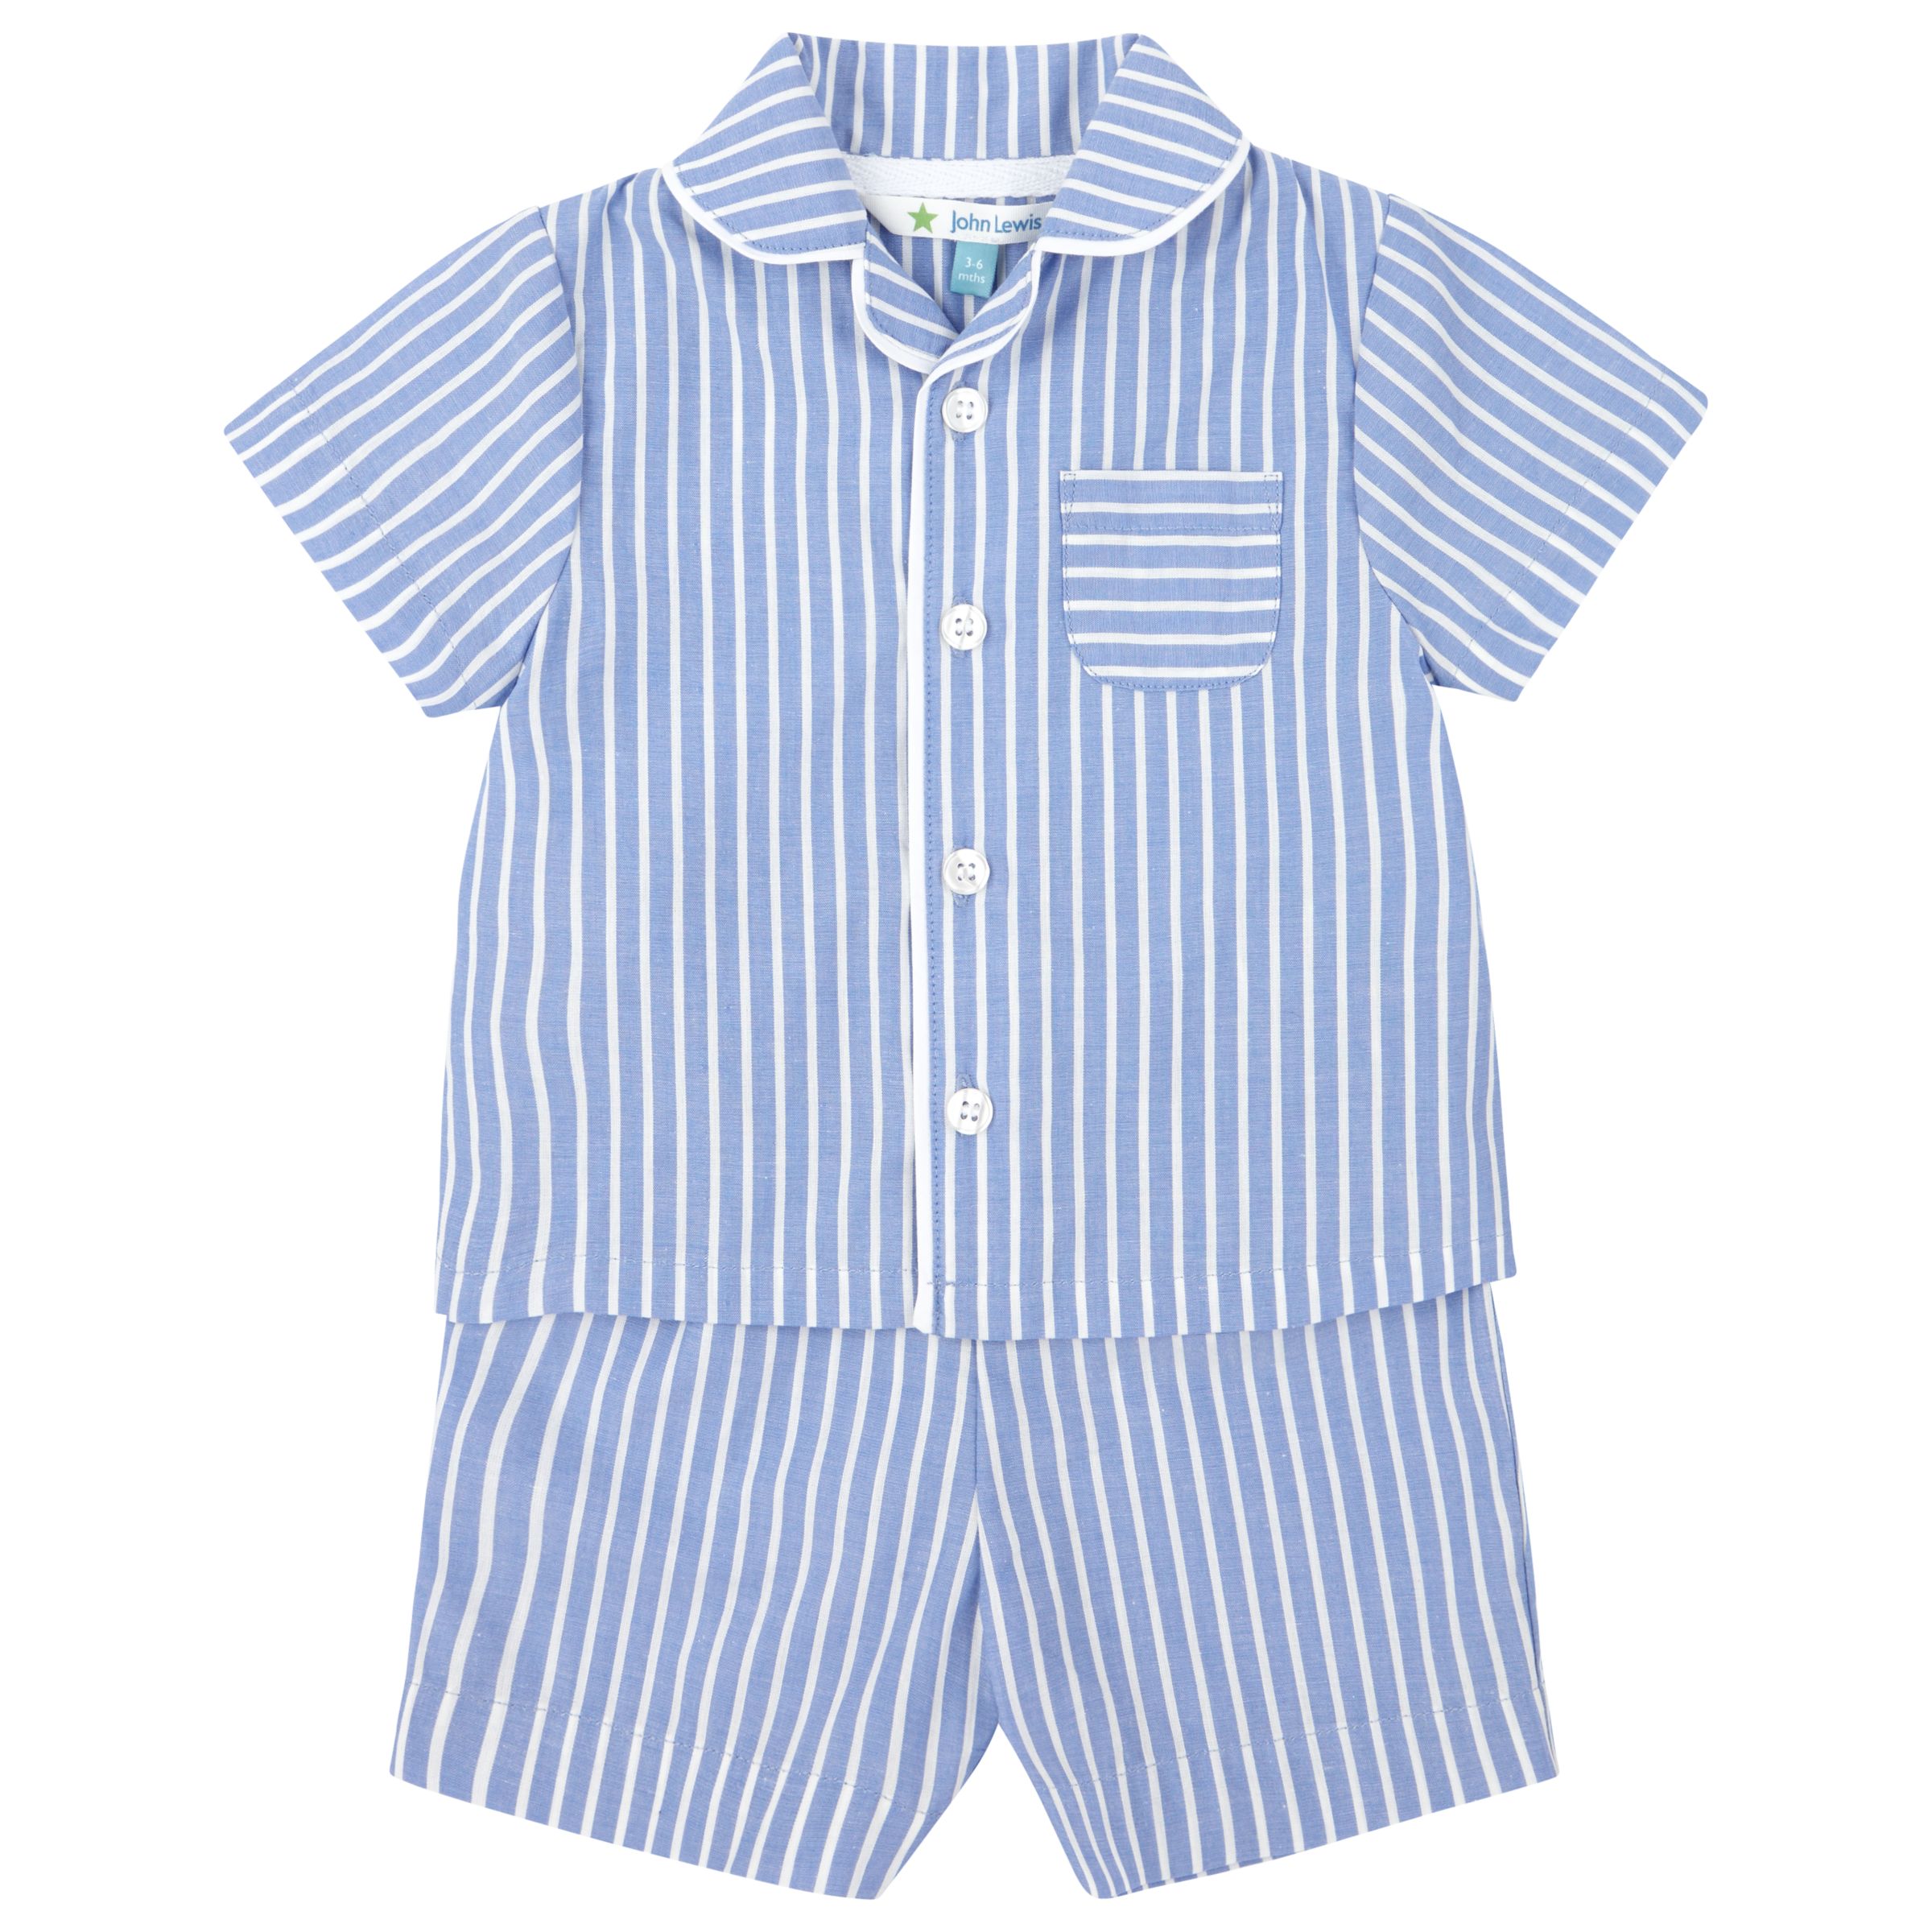 John Lewis Stripe Woven Pyjamas, Blue/White at John Lewis & Partners